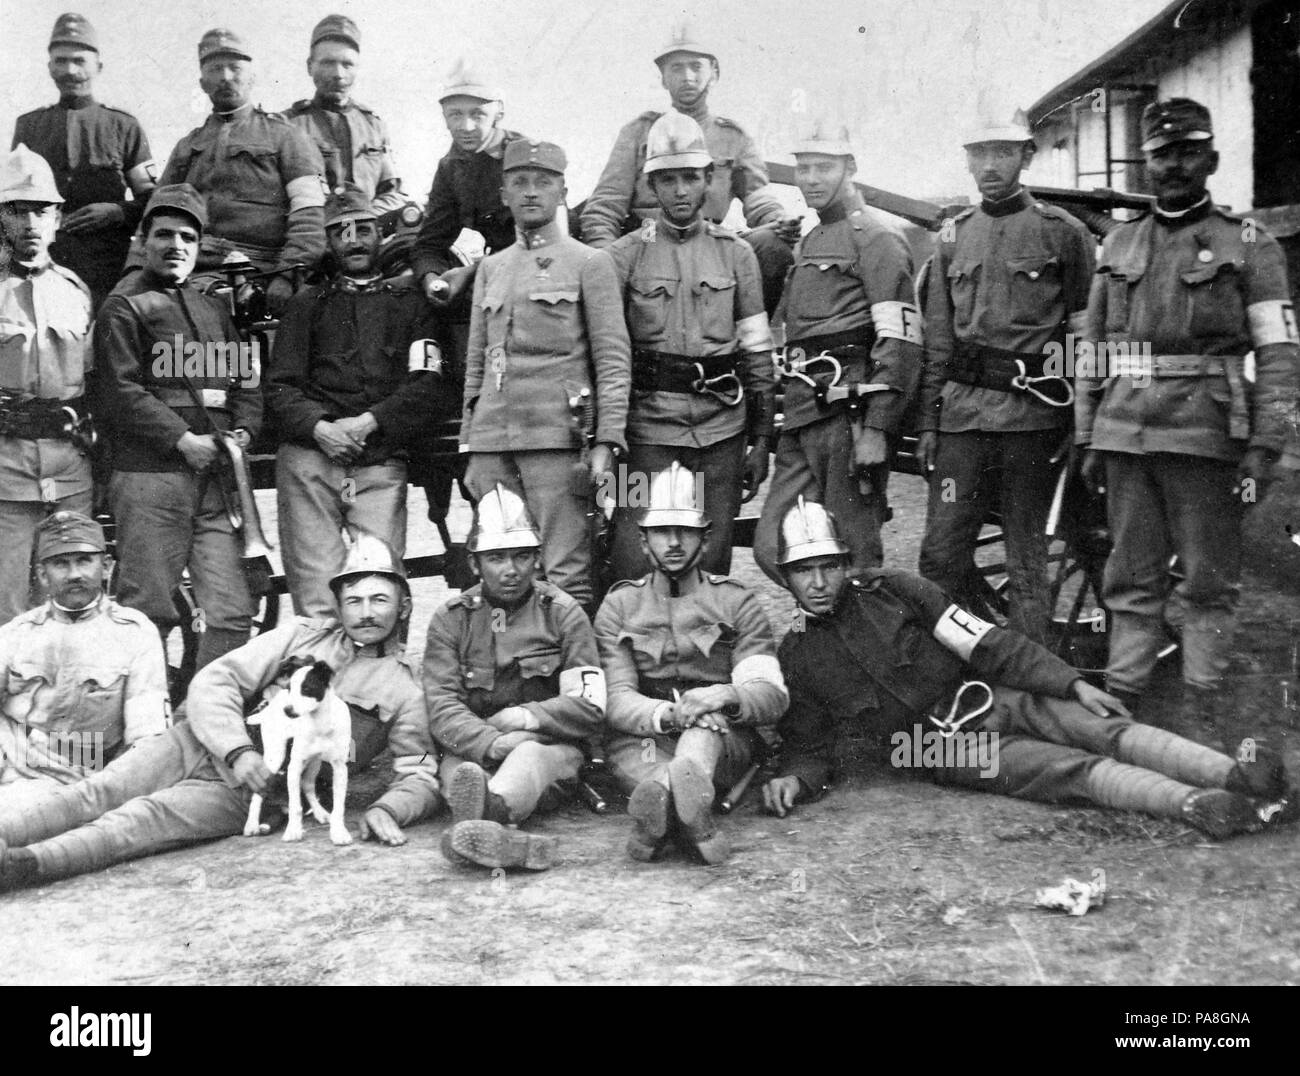 653 First World War, tableau, dog, men, uniform, armband, carabiner, helmet, firefighter Fortepan 4690 Stock Photo